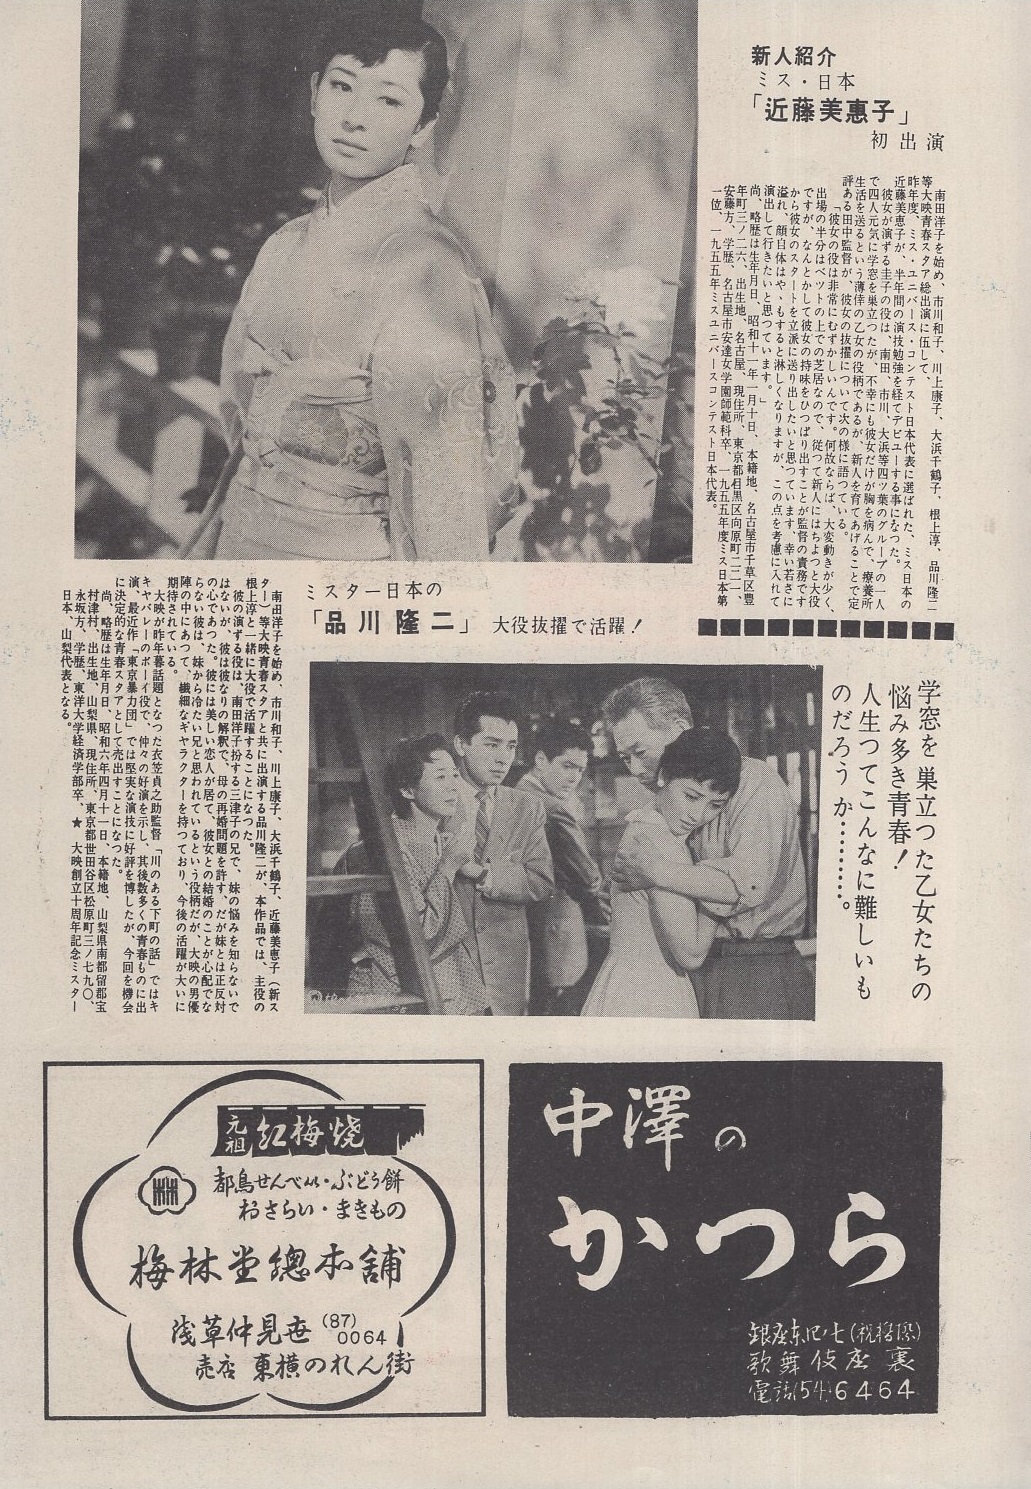 ナイン 映画 パンフレット 昭和58年9月16日発行 - 同人誌